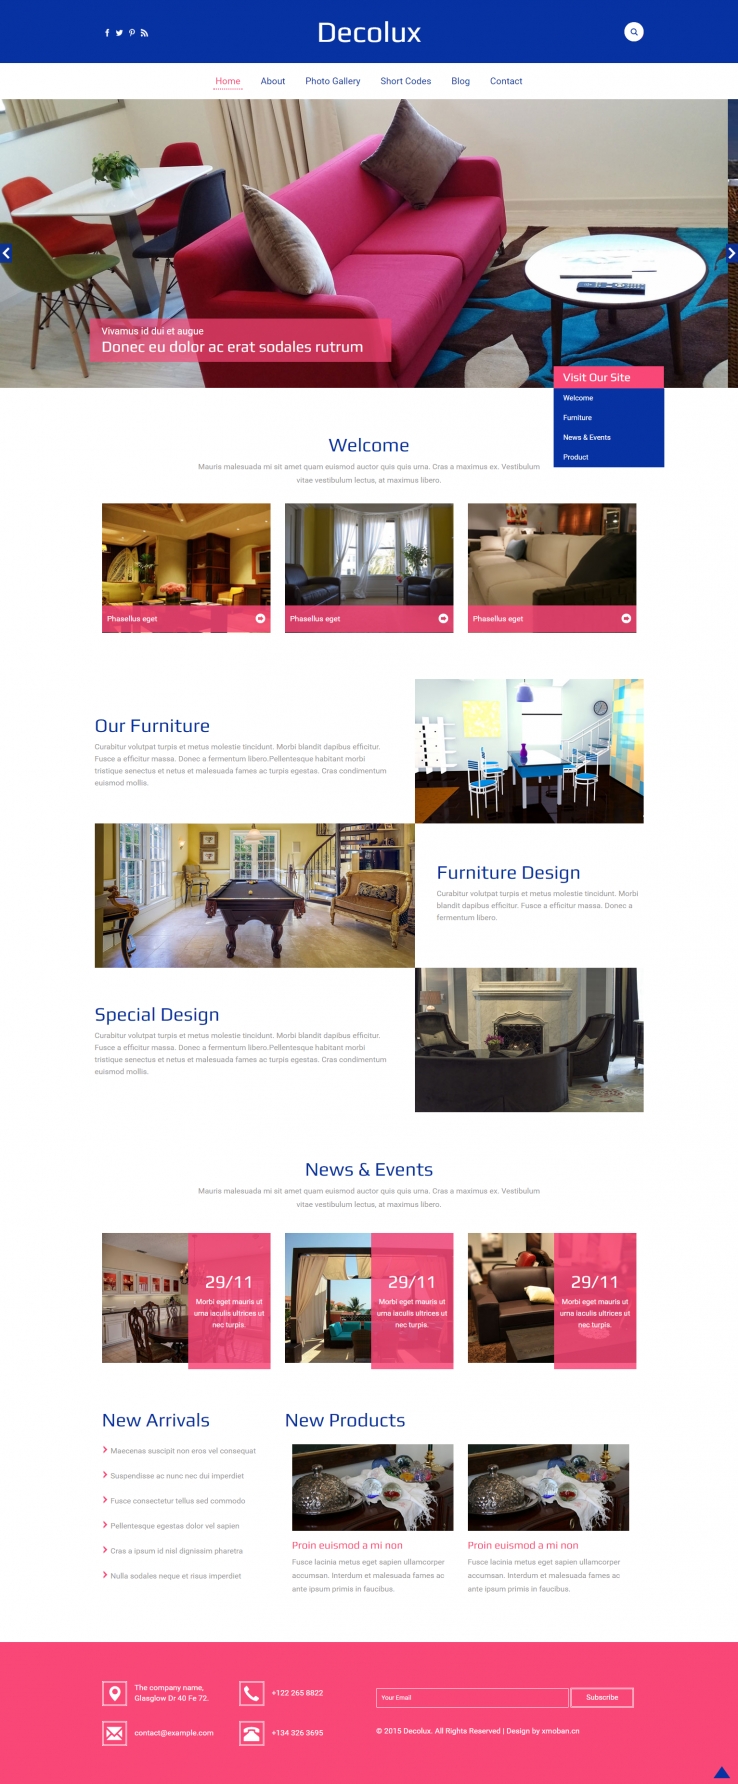 红色欧美风格的室内家具公司企业网站源码下载